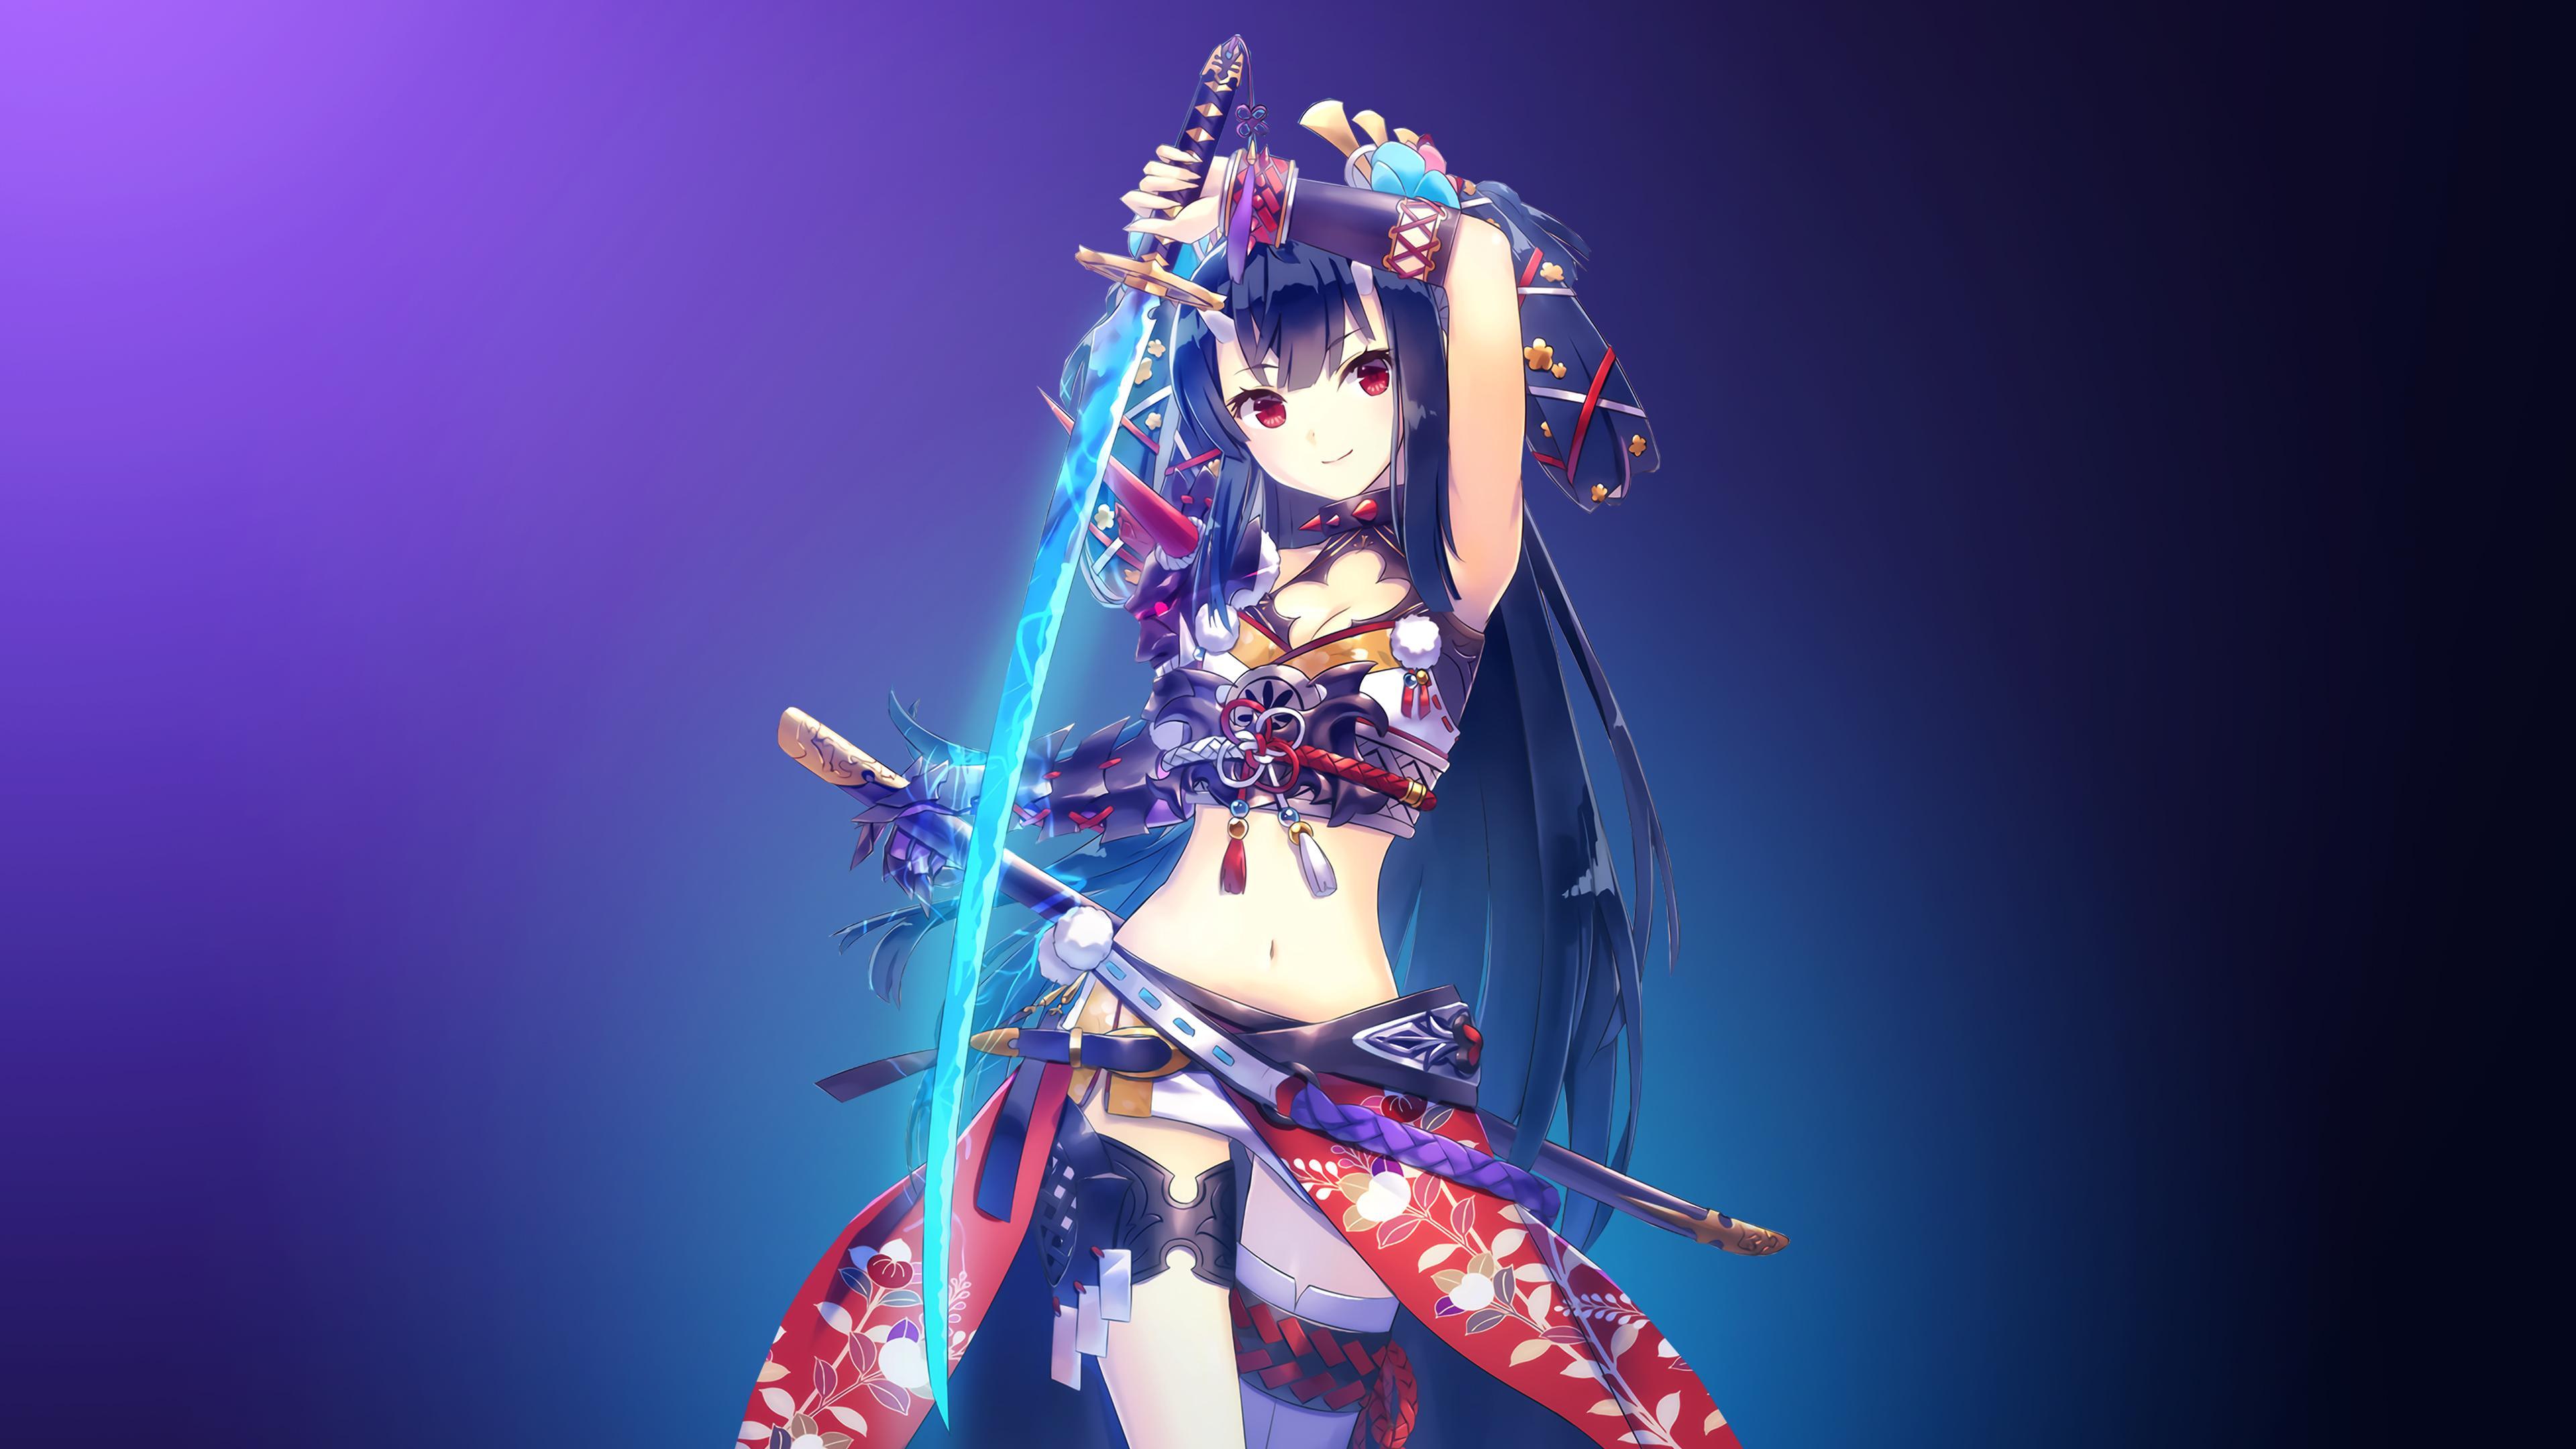 Wallpaper Warrior girl, Katana girl, 4K, Anime,. Wallpaper for iPhone, Android, Mobile and Desktop